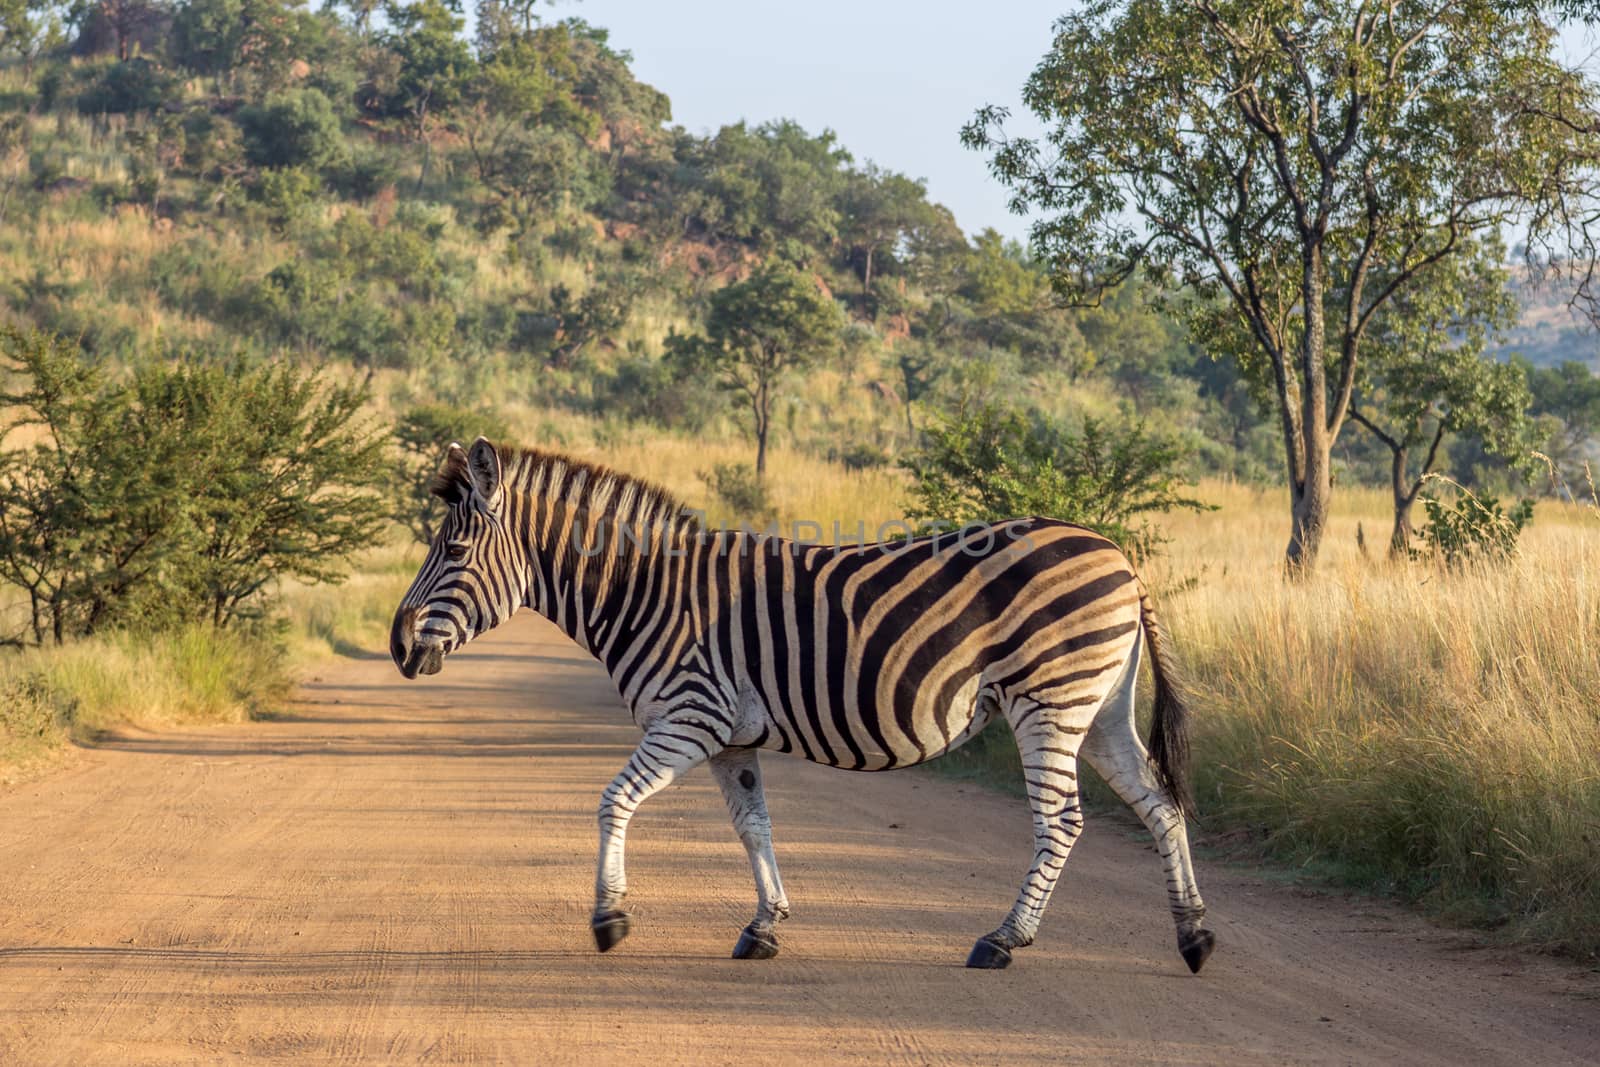 Burchels Zebra crossing a road by RiaanAlbrecht